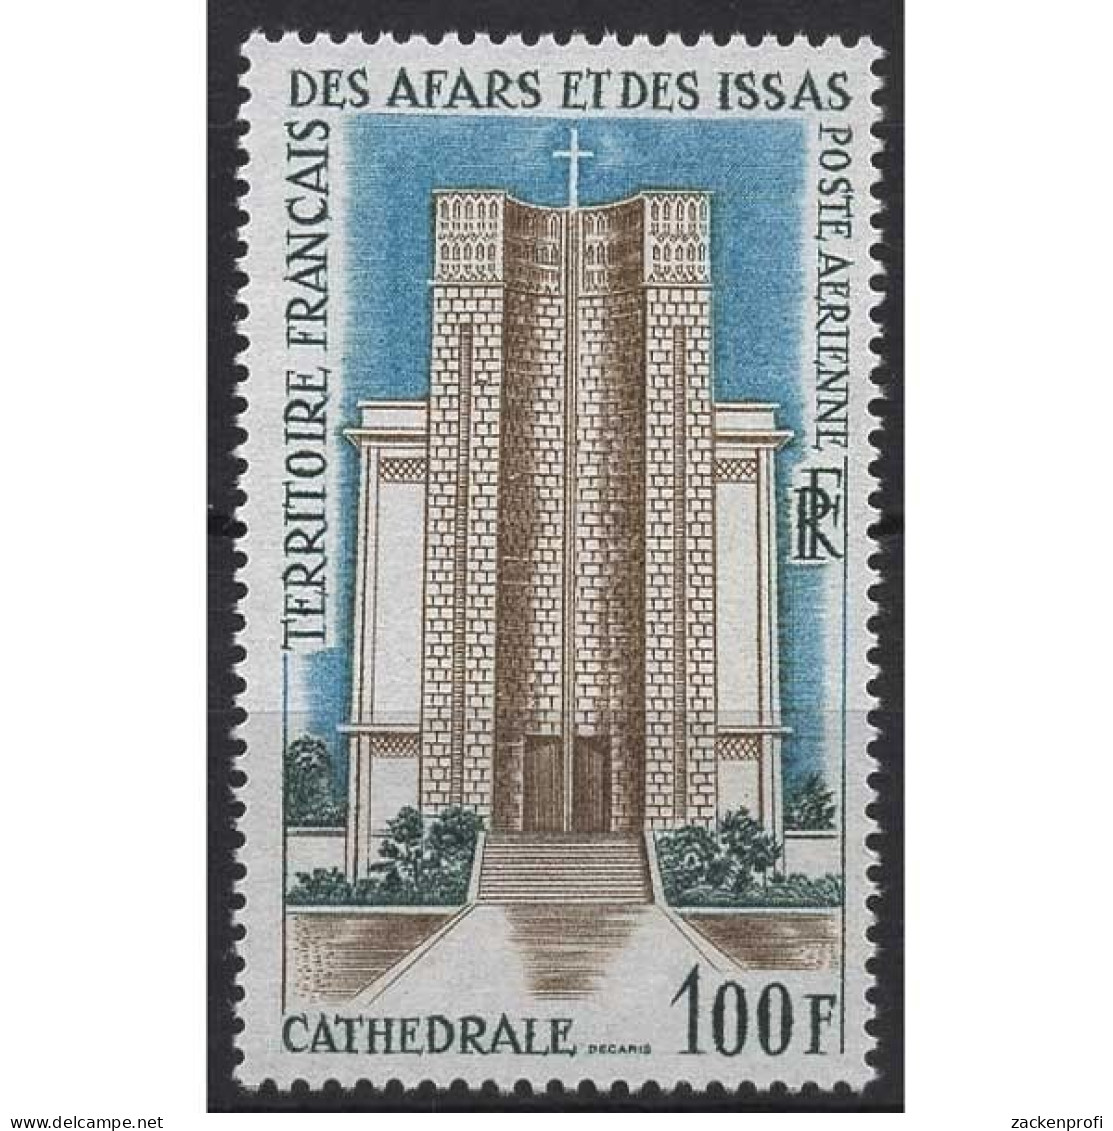 Afar Und Issa 1969 Öffentliche Gebäude Kathedrale Kirche 25 Postfrisch - Ongebruikt